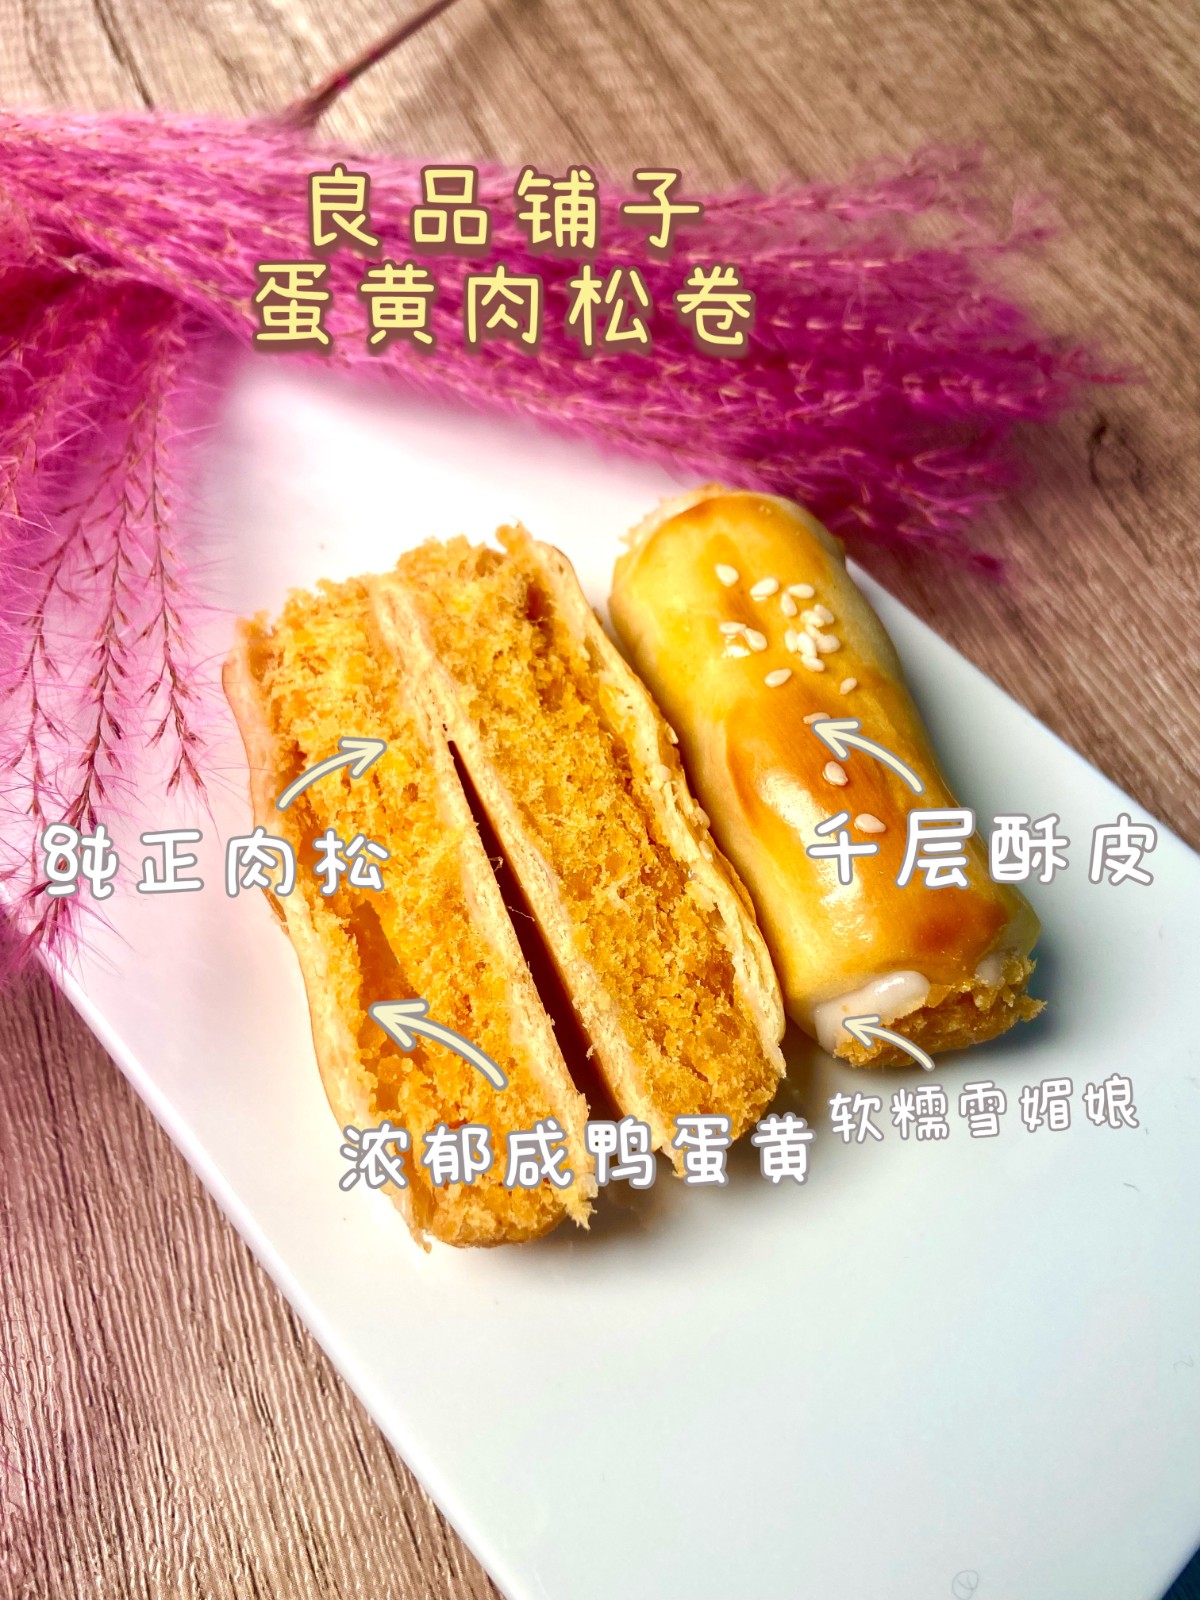 良品铺子蛋黄肉松卷420g面包早餐零食蛋黄酥网红蛋糕休闲小吃糕点